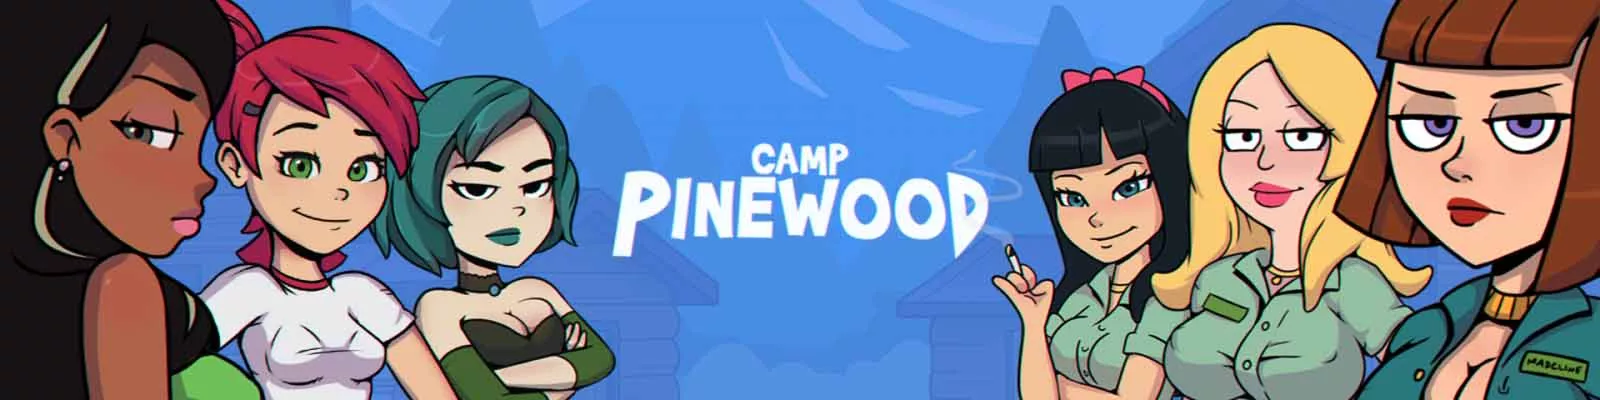 Camp Pinewood voksenspil